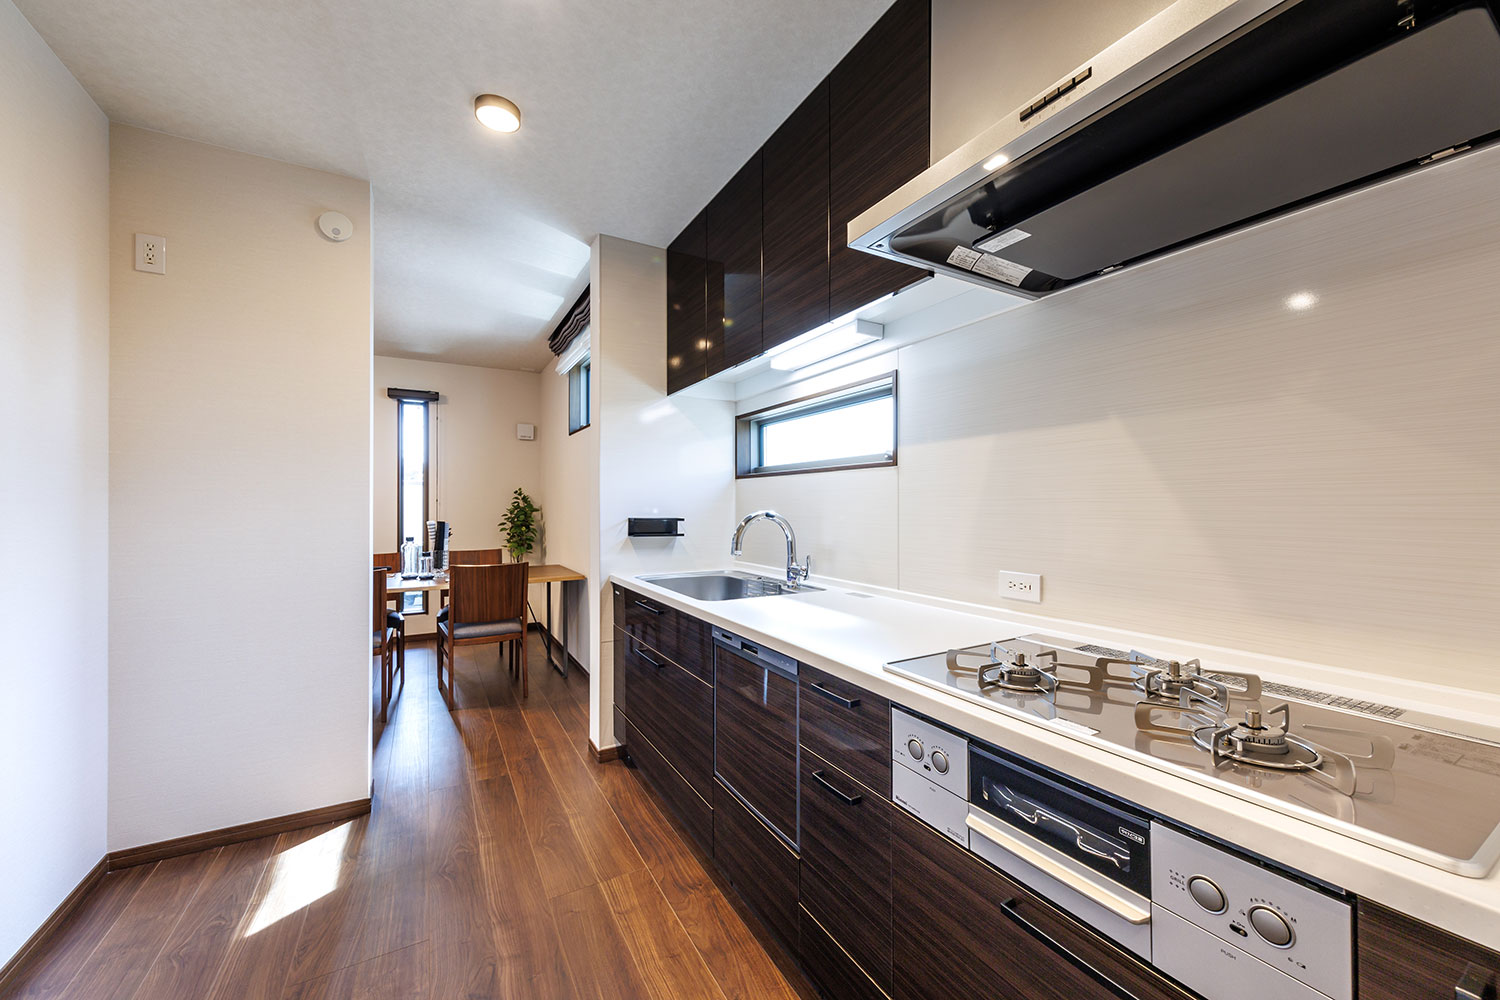 T-1／キッチンは独立タイプでワイドなシンクや広々作業スペース、食器洗い乾燥機など便利な設備が搭載されています。